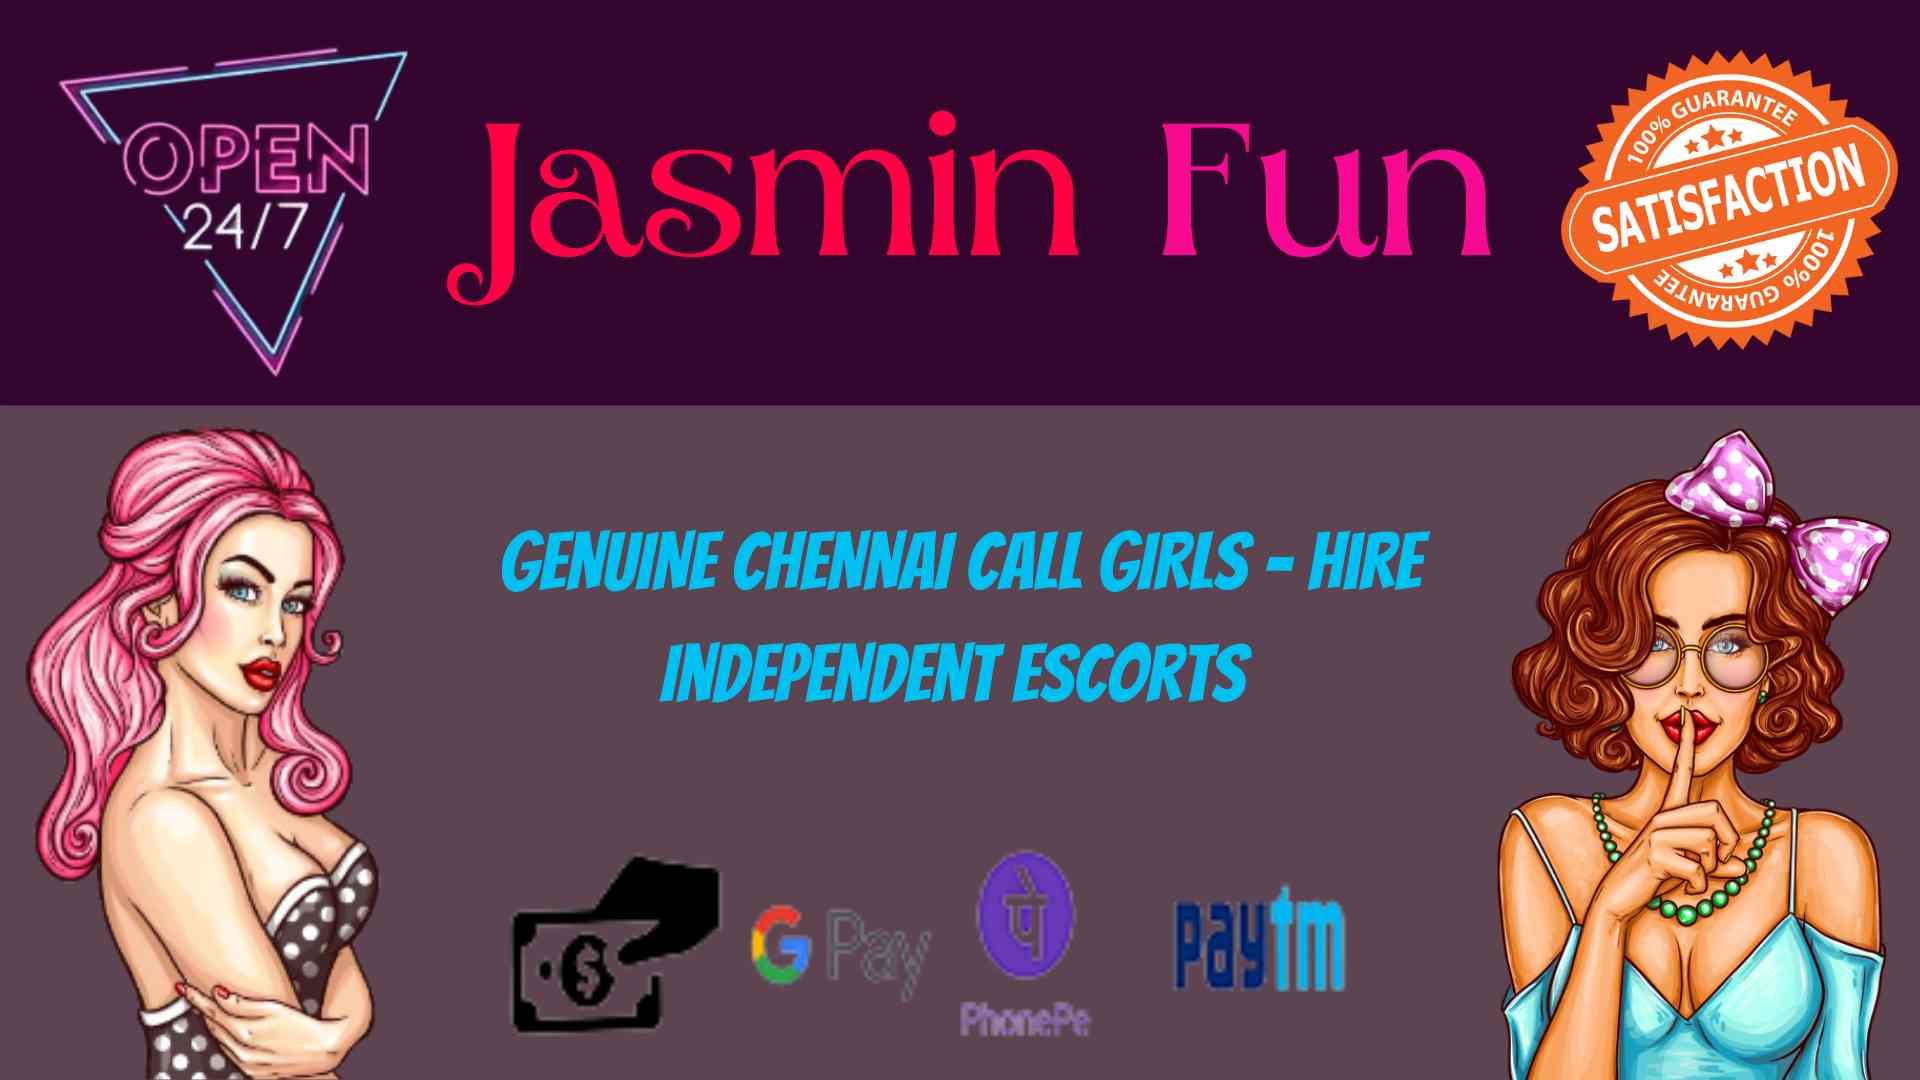 Chennai call girl